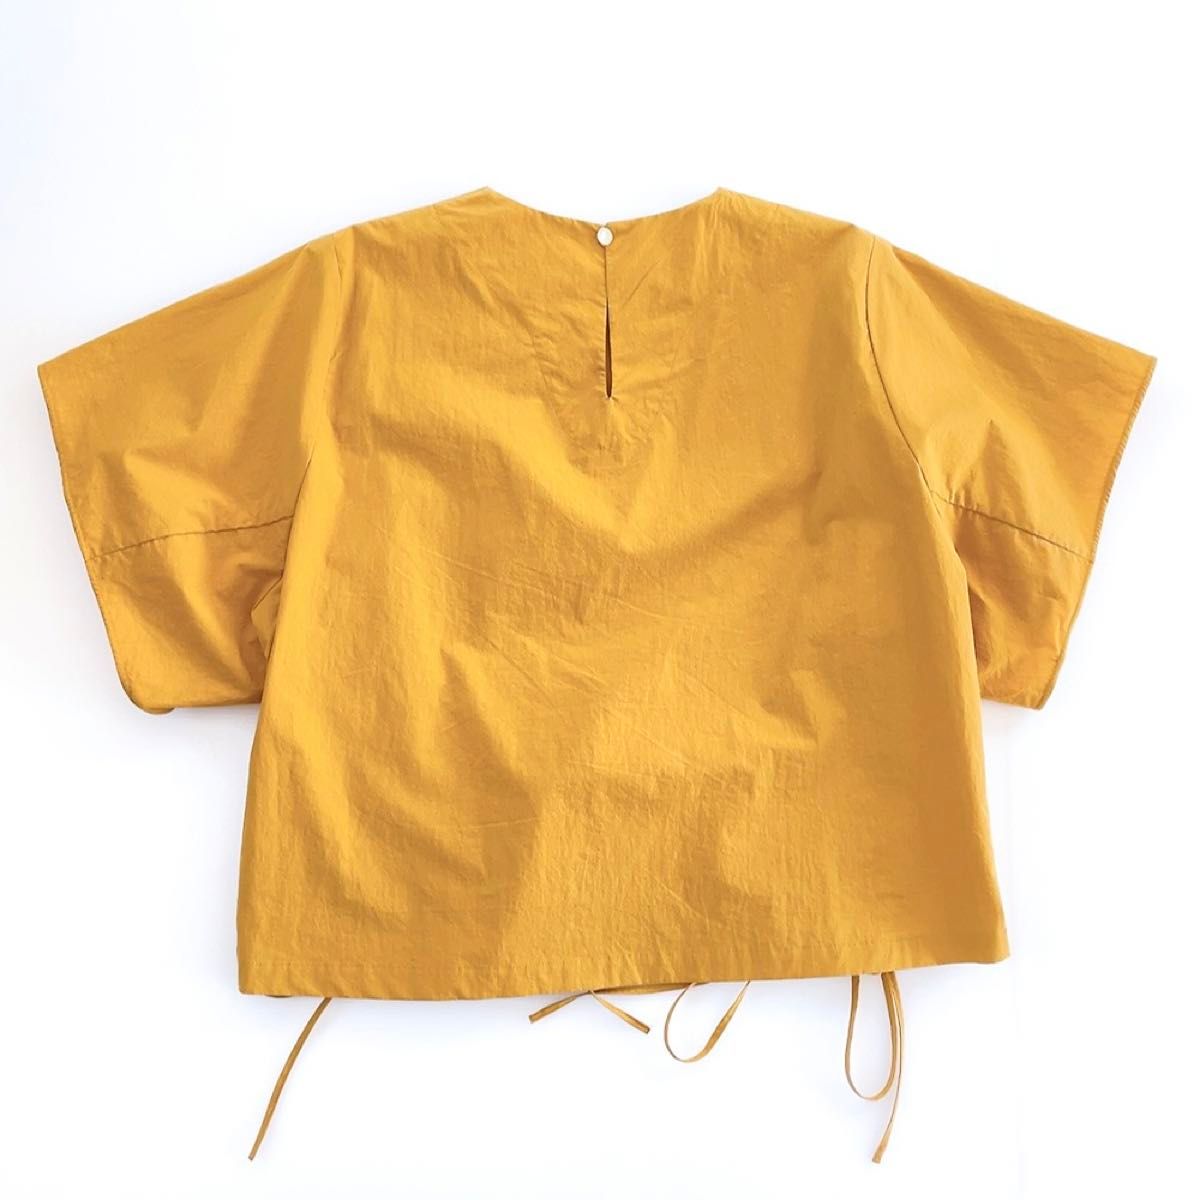 SACRA サクラ 38 M カットソー シャツ ブラウス 春夏 半袖 編み上げ 黄色 マスタード 日本製 綿100% コットン